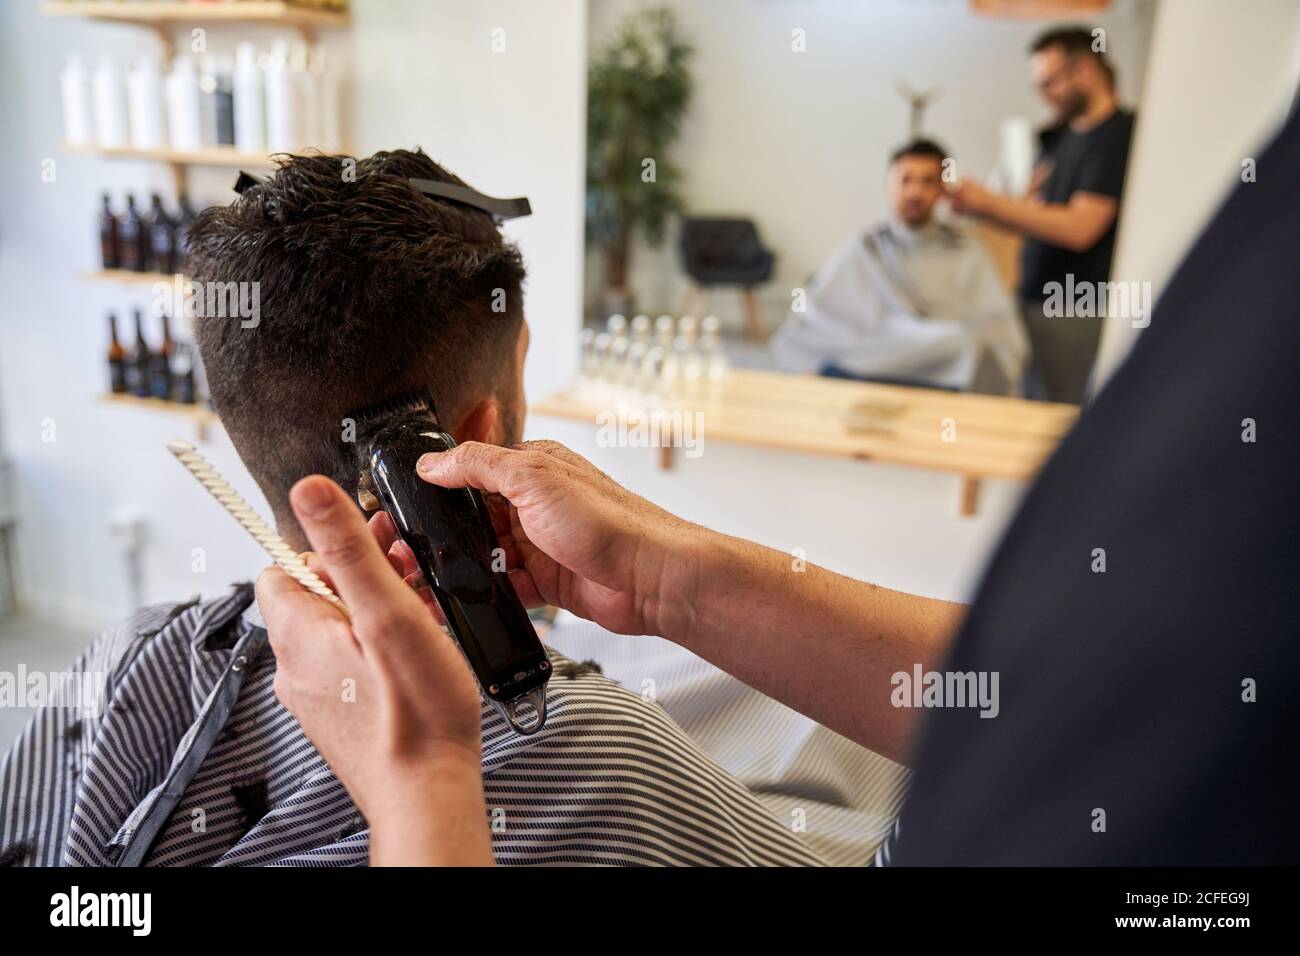 Stock Foto von einer Hand eines Barbiers schneiden Haare hinter den Ohren  eines Kunden mit einem Rasierer. Barbershop und Lifestyle Stockfotografie -  Alamy